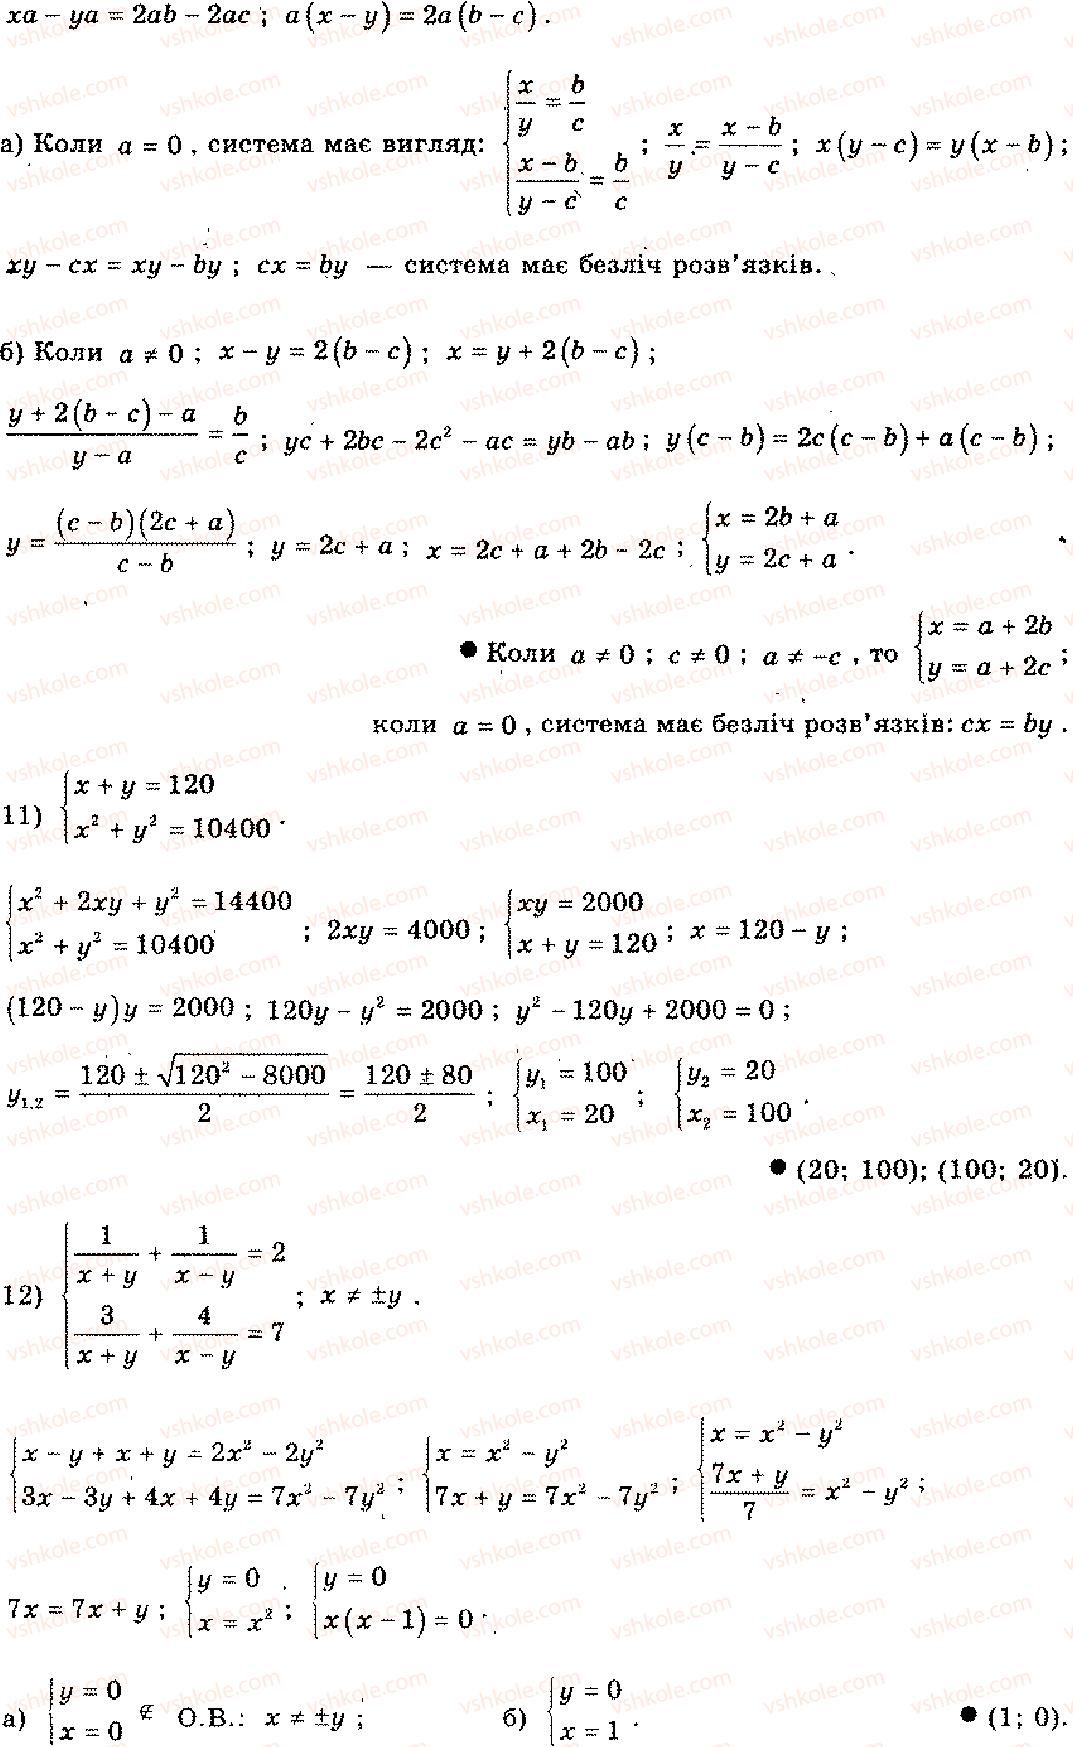 11-algebra-mi-shkil-zi-slepkan-os-dubinchuk-2006--rozdil-15-povtorennya-kursu-algebri-osnovnoyi-shkoli-4-2-rnd2298.jpg